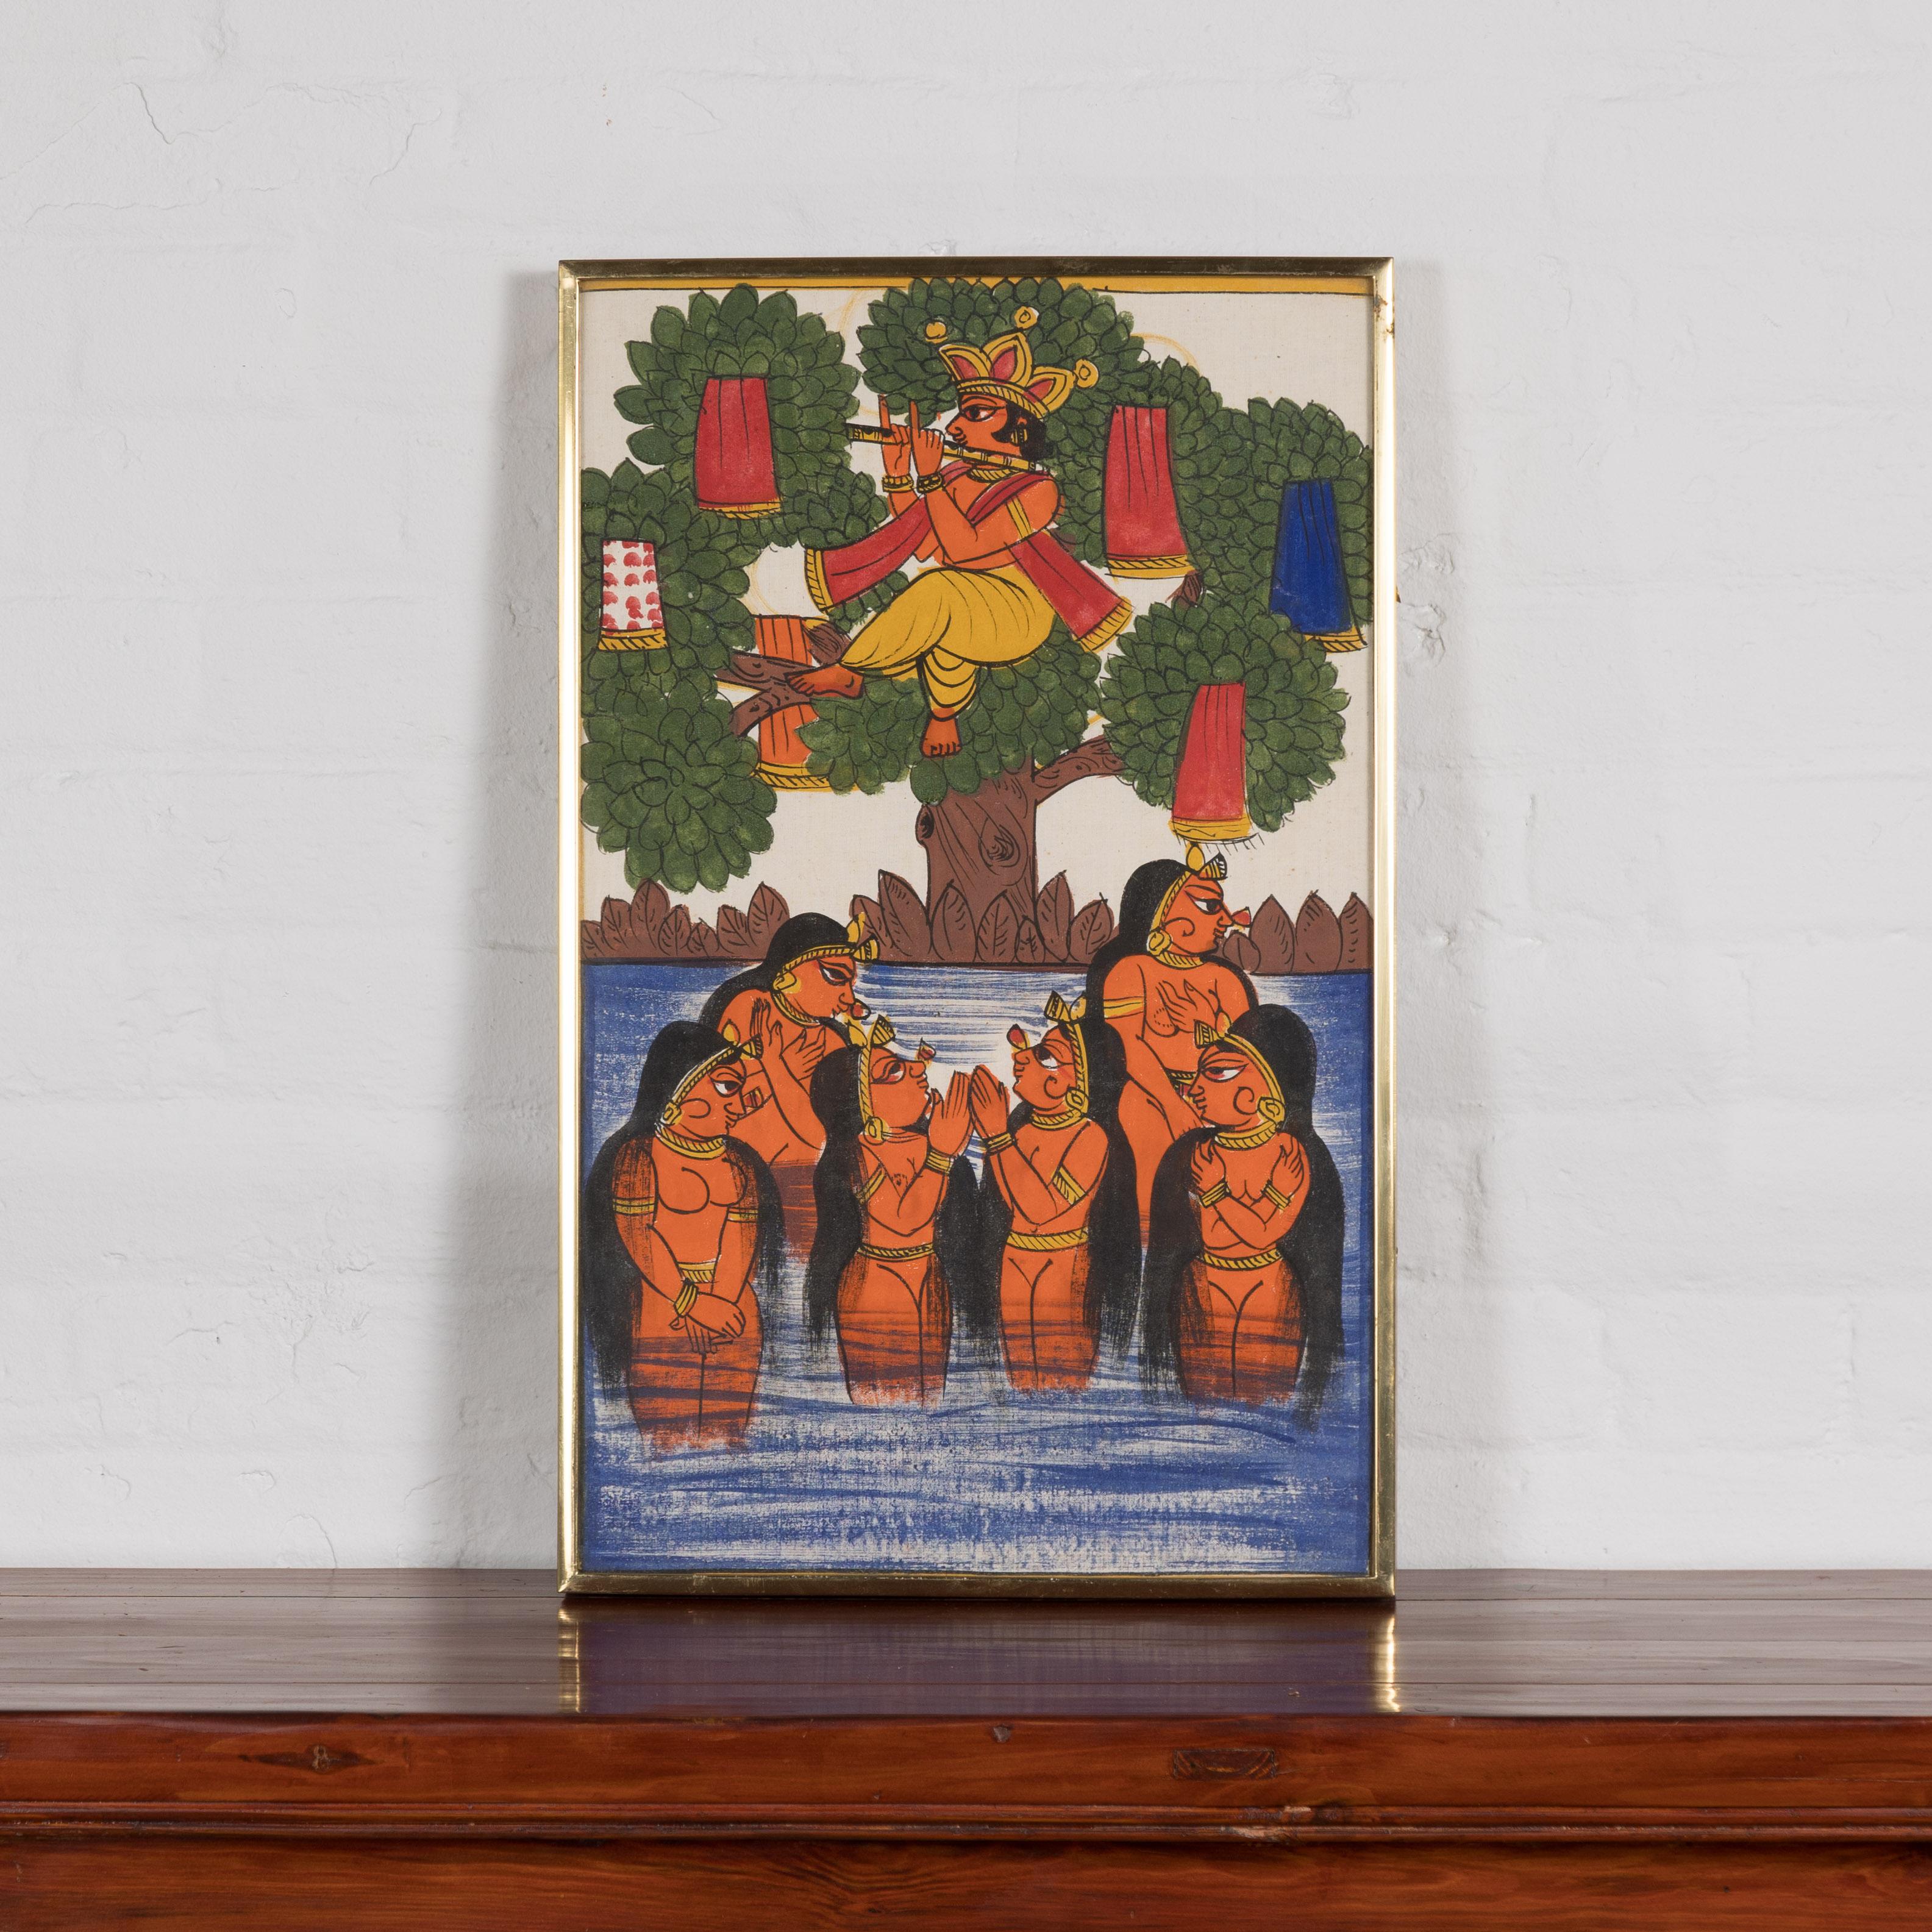 Ein antikes indisches handgemaltes Volkskunstgemälde, das sechs Jungfrauen und einen Musikanten darstellt. Ein bezauberndes Stück indischen Kulturerbes, ein antikes Volkskunstgemälde, das eine idyllische Szene mit sechs Jungfrauen und einem